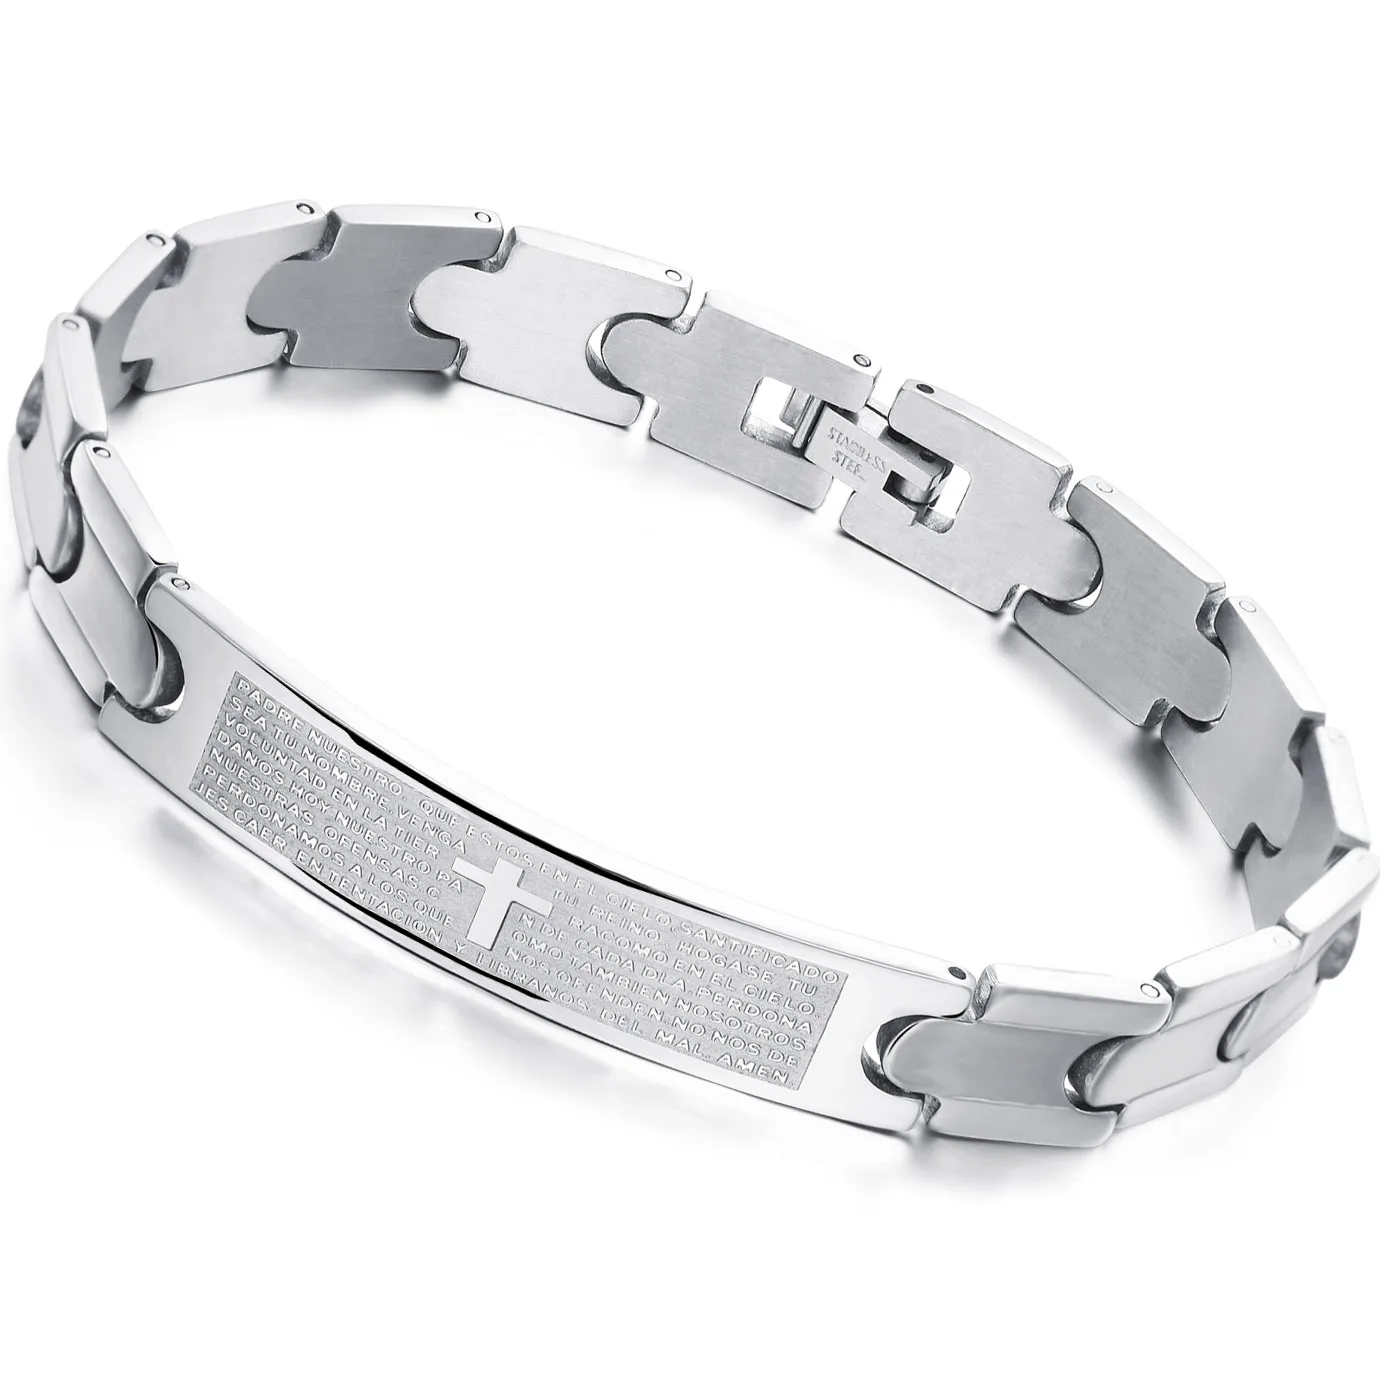 Браслет Крест из нержавеющей стали 10 мм браслеты дружбы для лучших друзей подарки на день рождения для него мужские браслеты для женщин - Окраска металла: As Picture